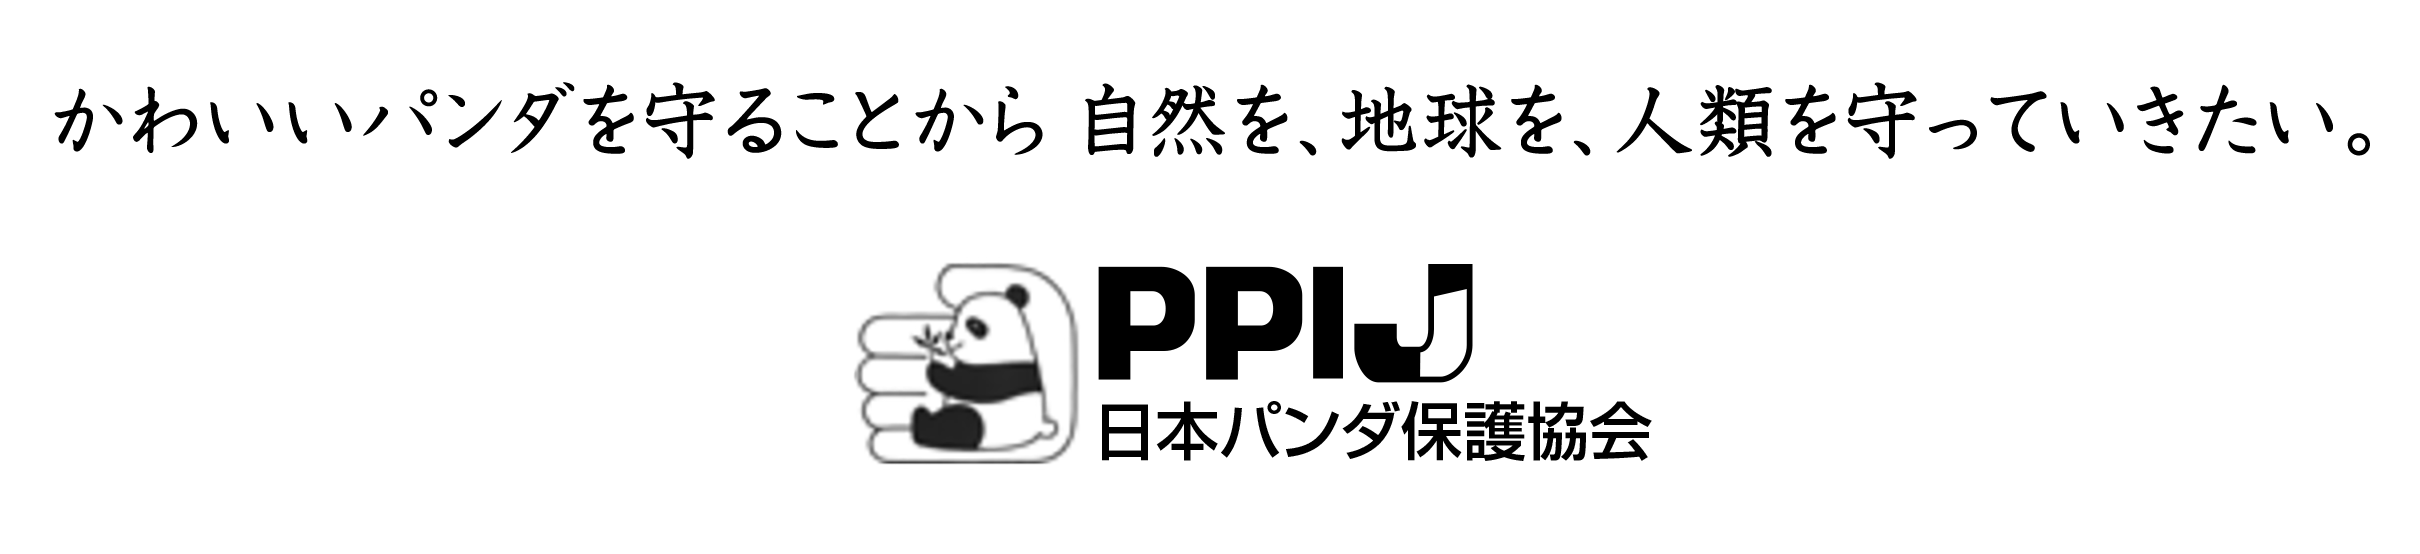 日本パンダ保護協会